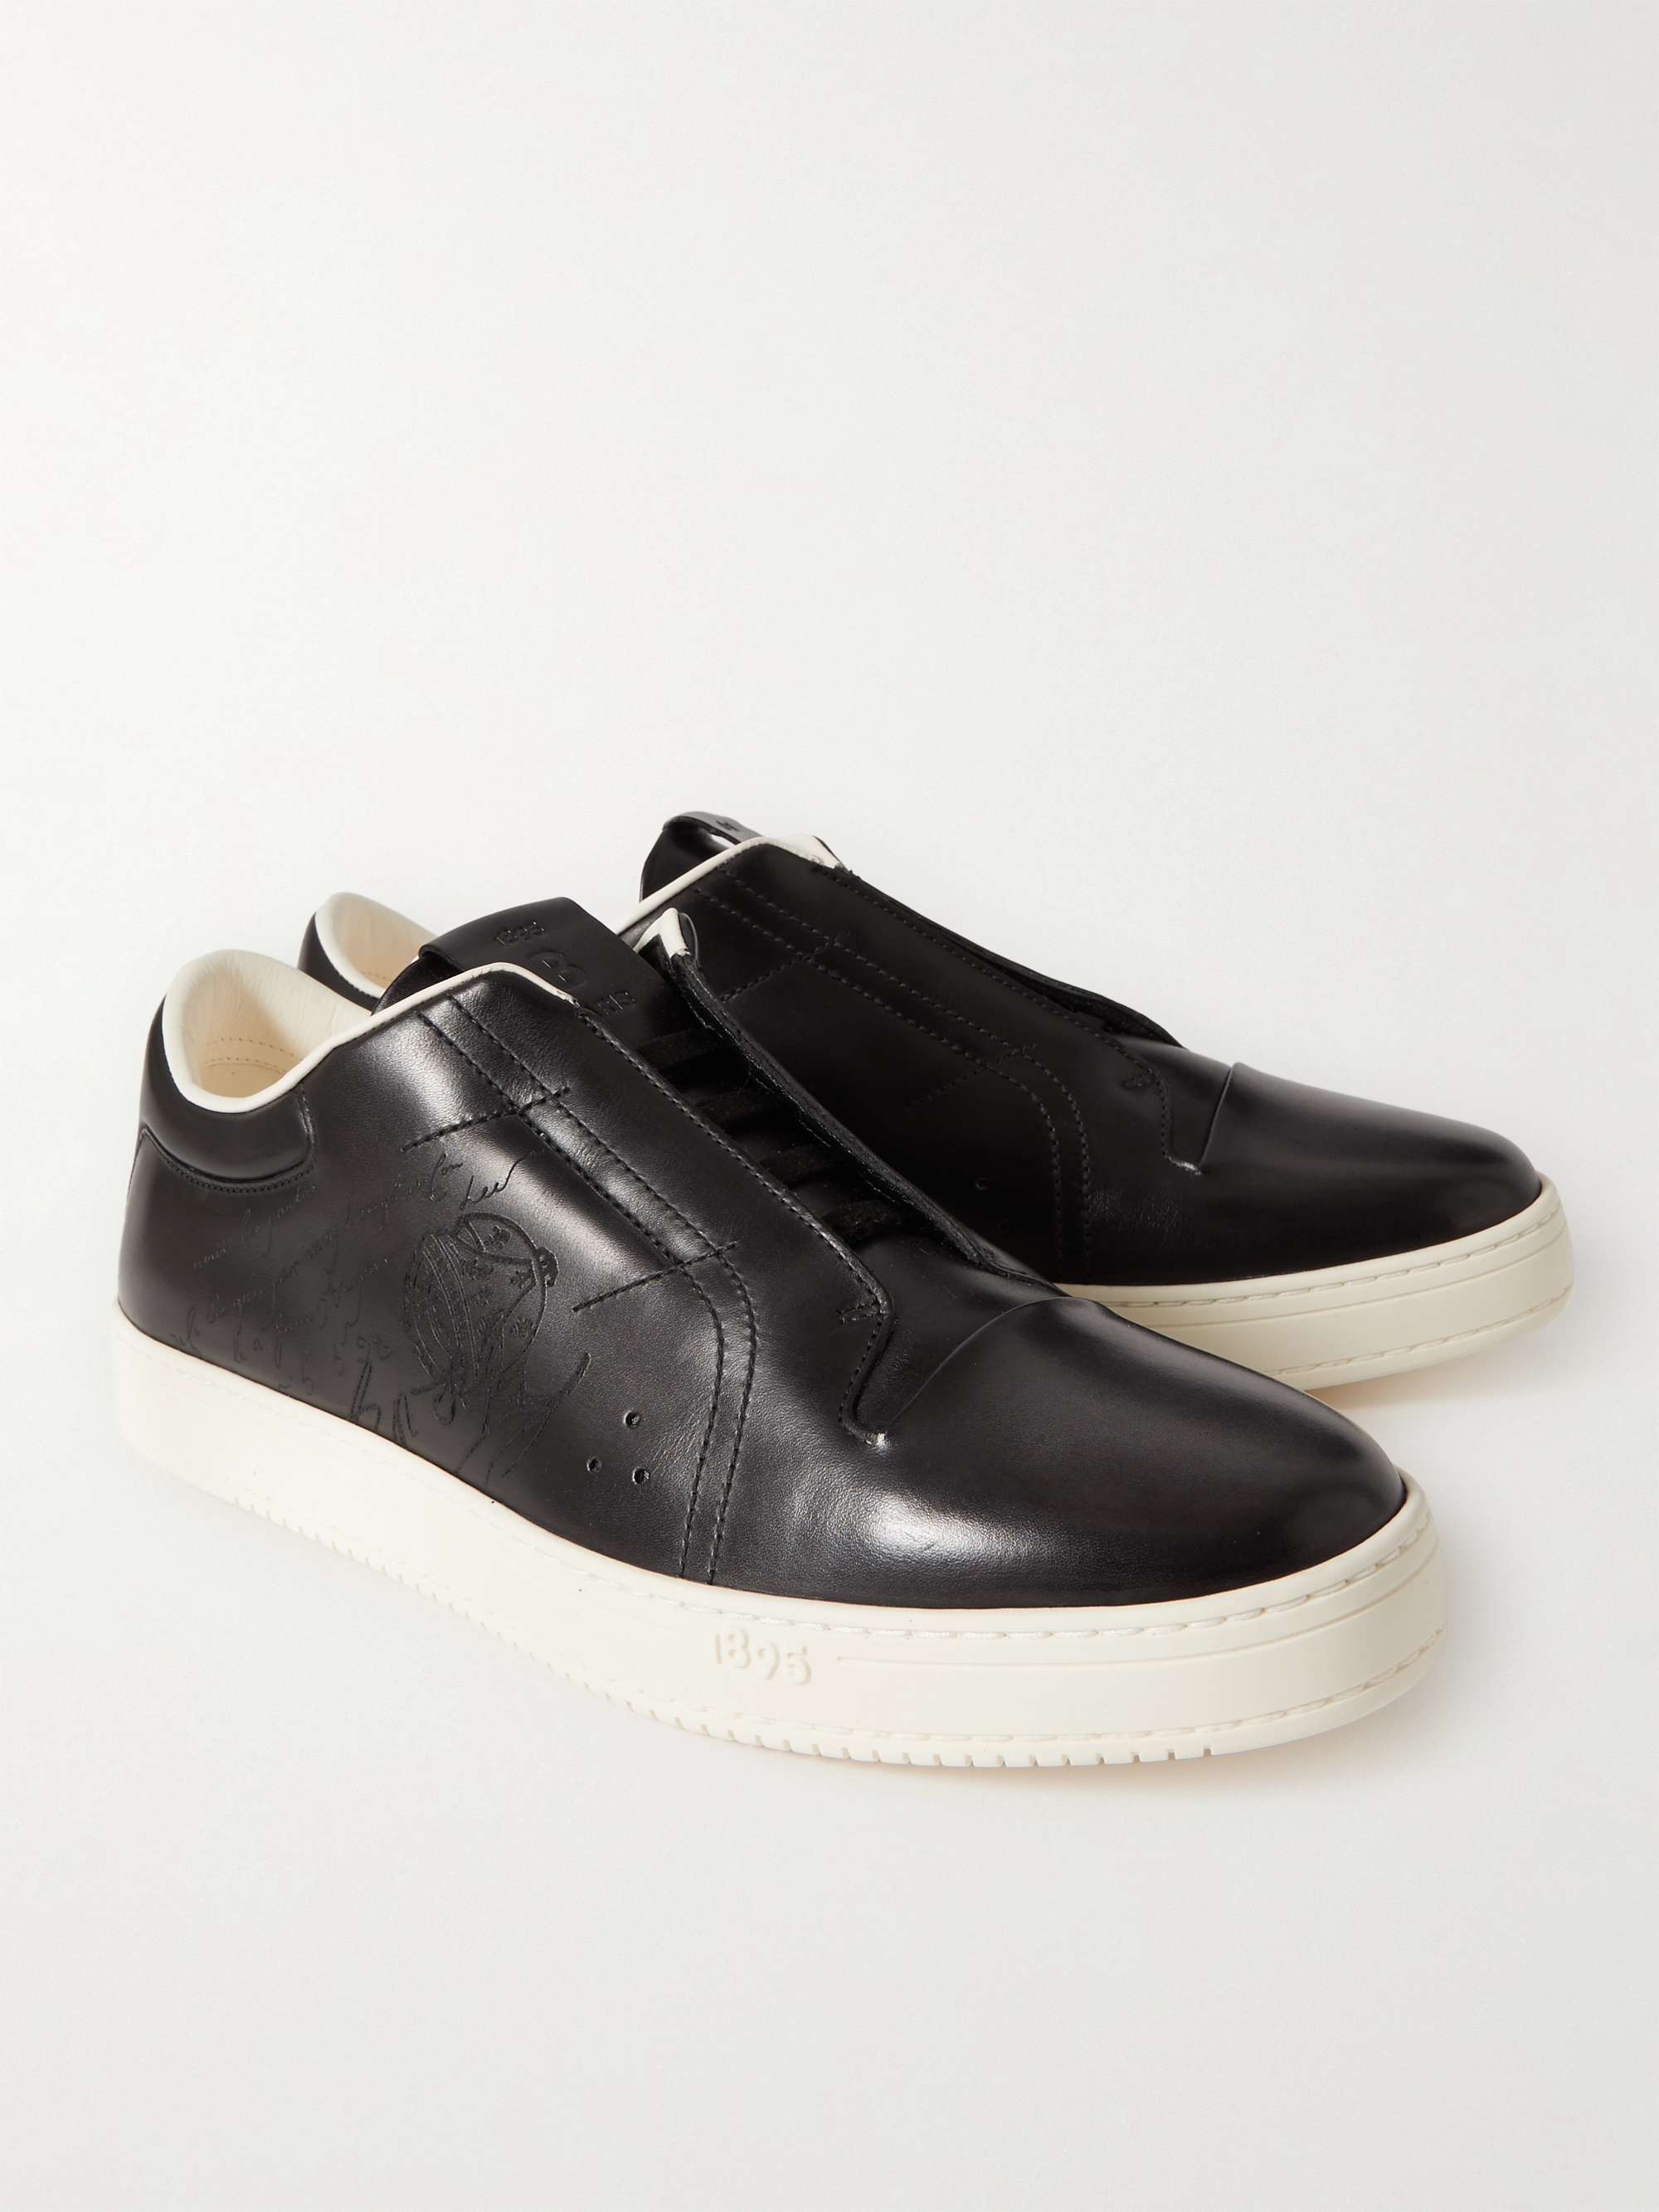 BERLUTI Playtime Scritto Venezia Leather Slip-On Sneakers for Men | MR ...